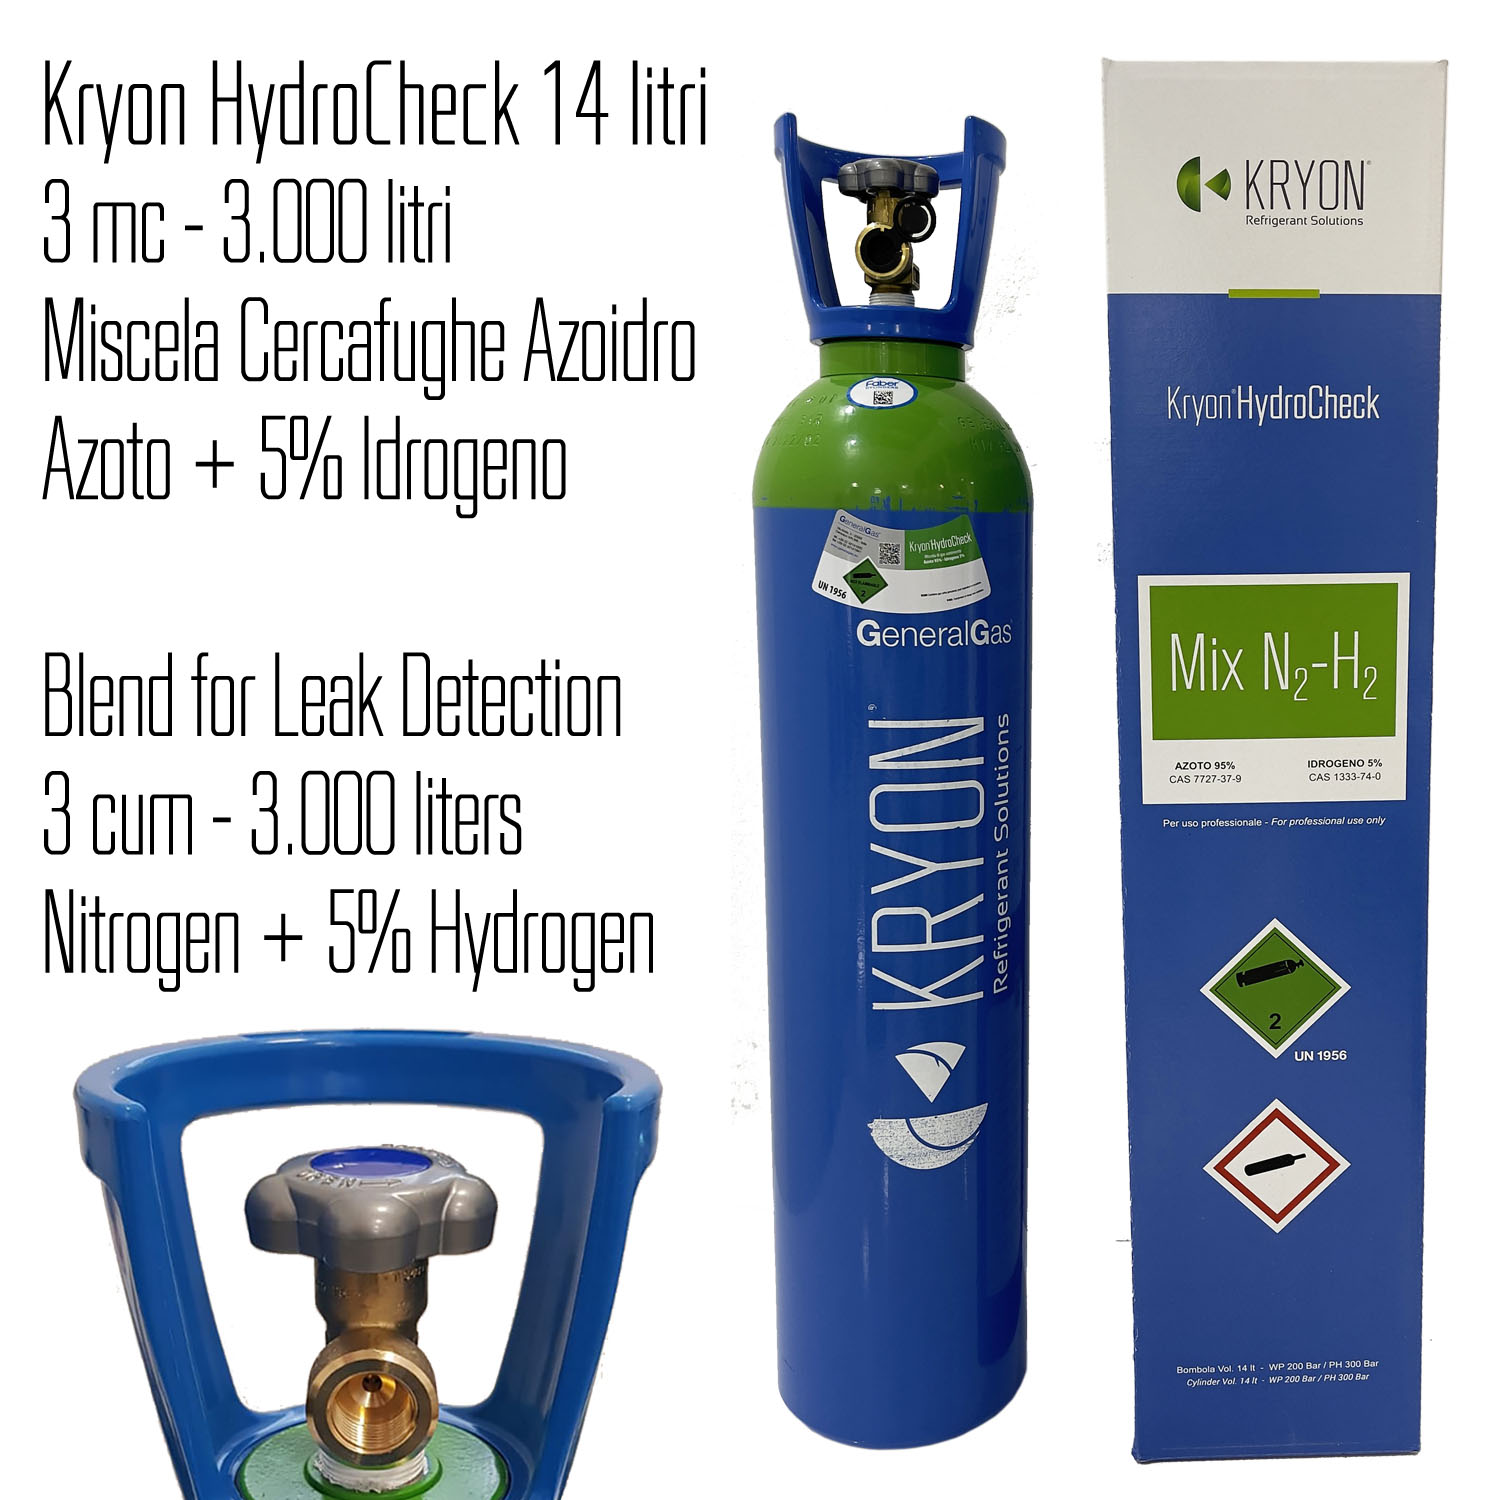 Kit Ricerca Fughe Professionale (Refrigerazione e Condizionamento) composto da bombola azoidro Kryon® HydroCheck da 3 mc/3000 litri di miscela, K-Leak Tester e strumento cercafughe elettronico - Foto 2